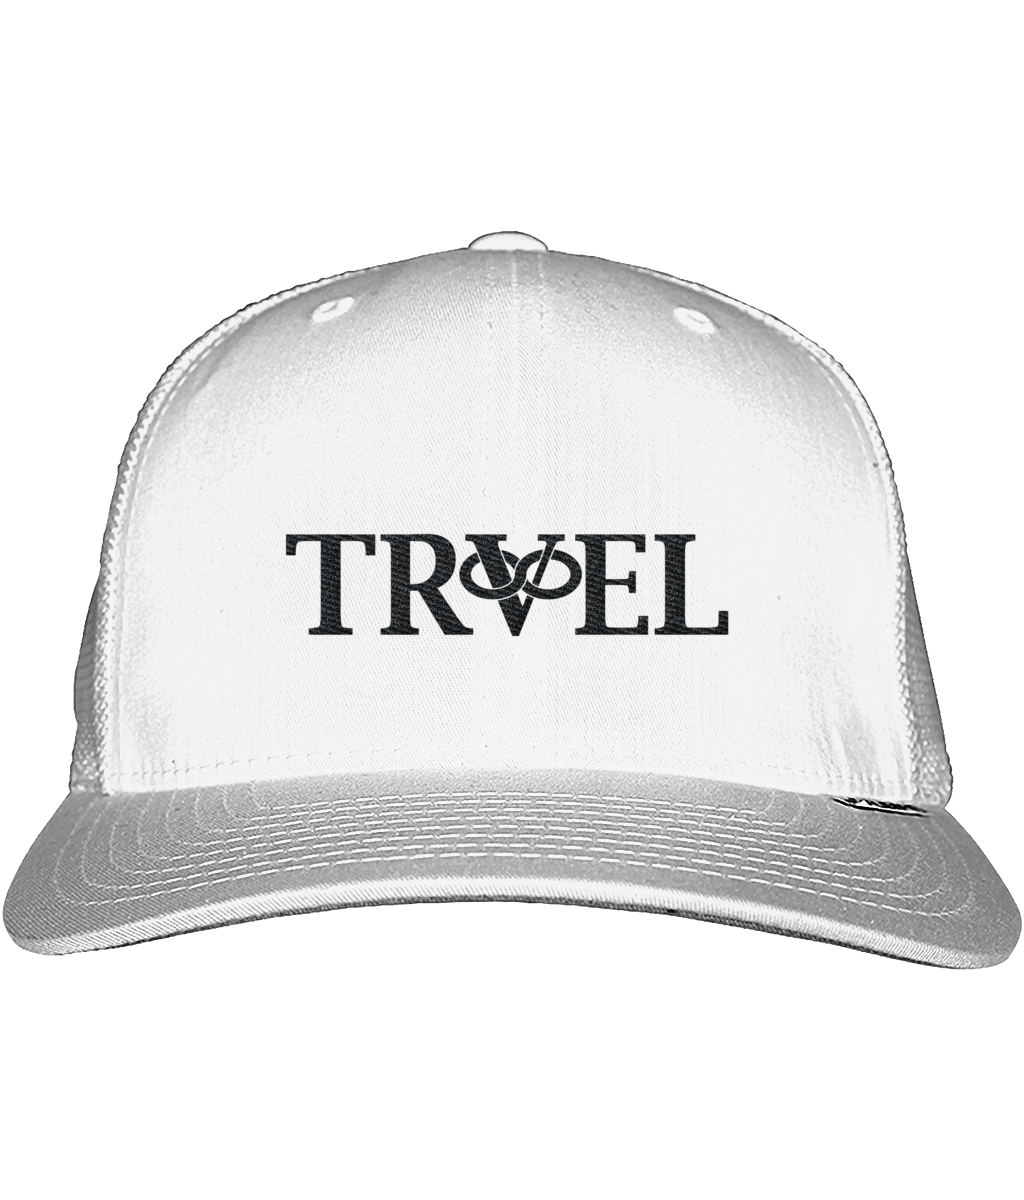 Travel Trucker Hat